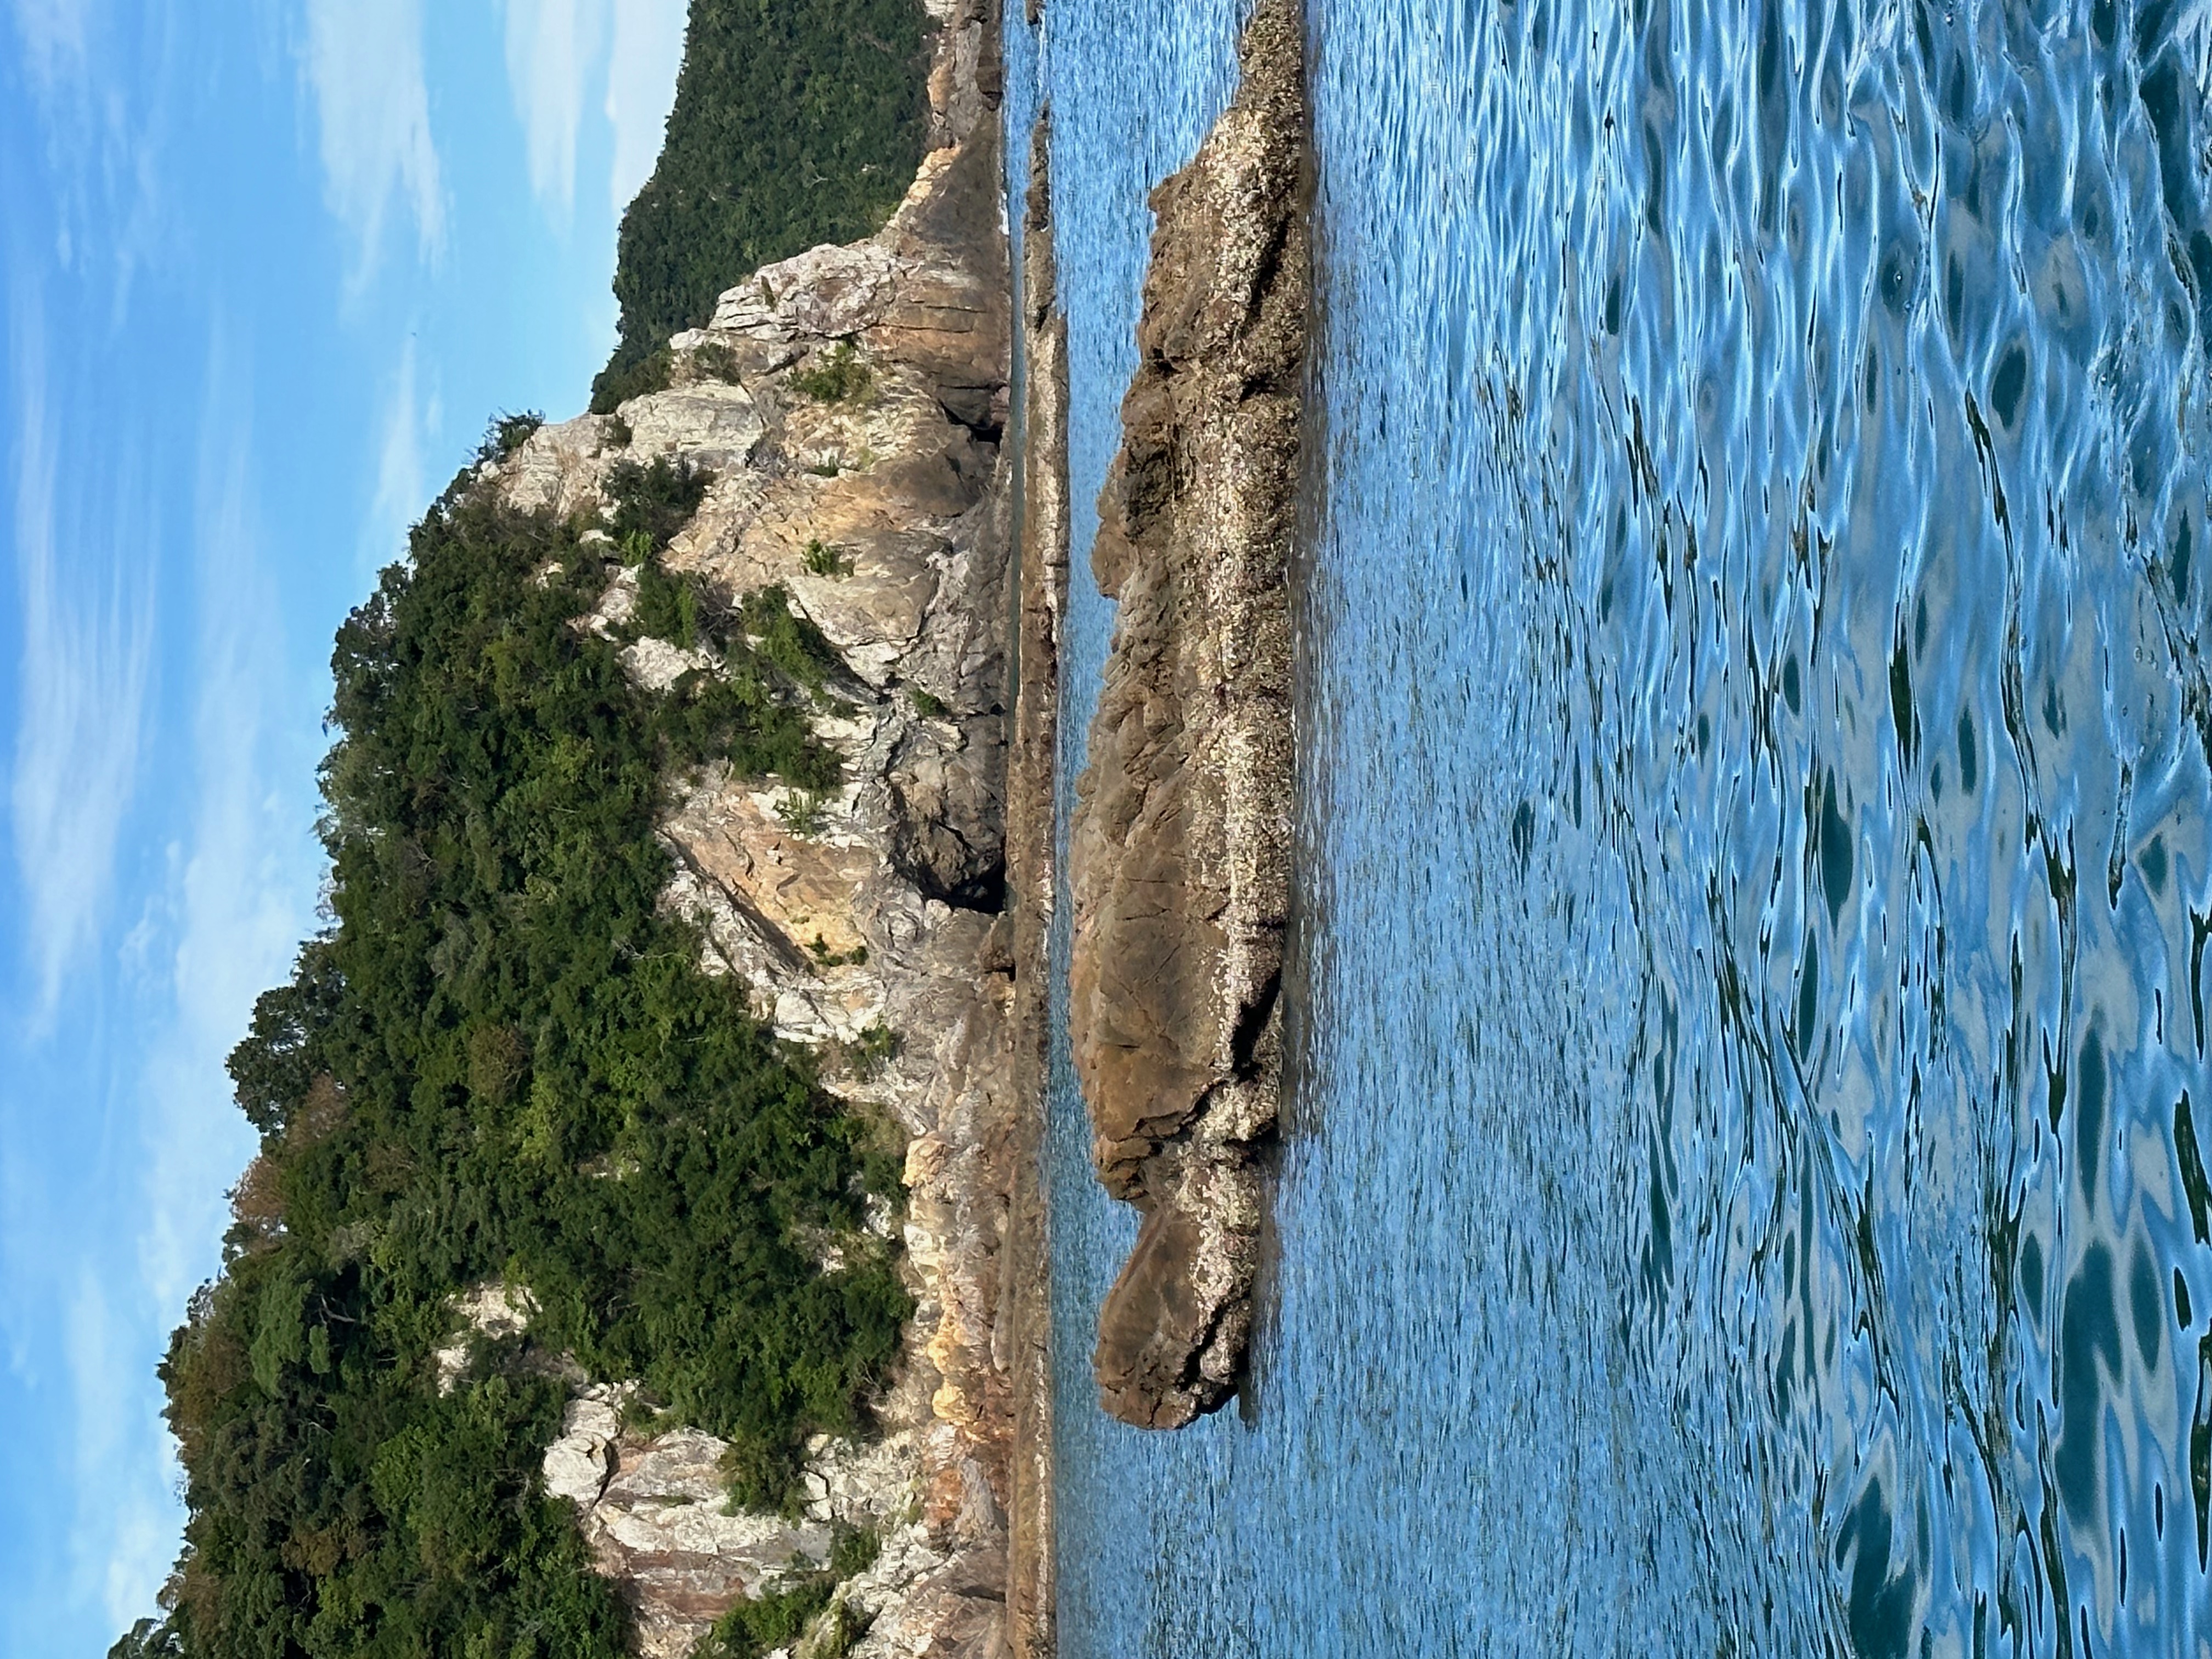 カメ島's image 1